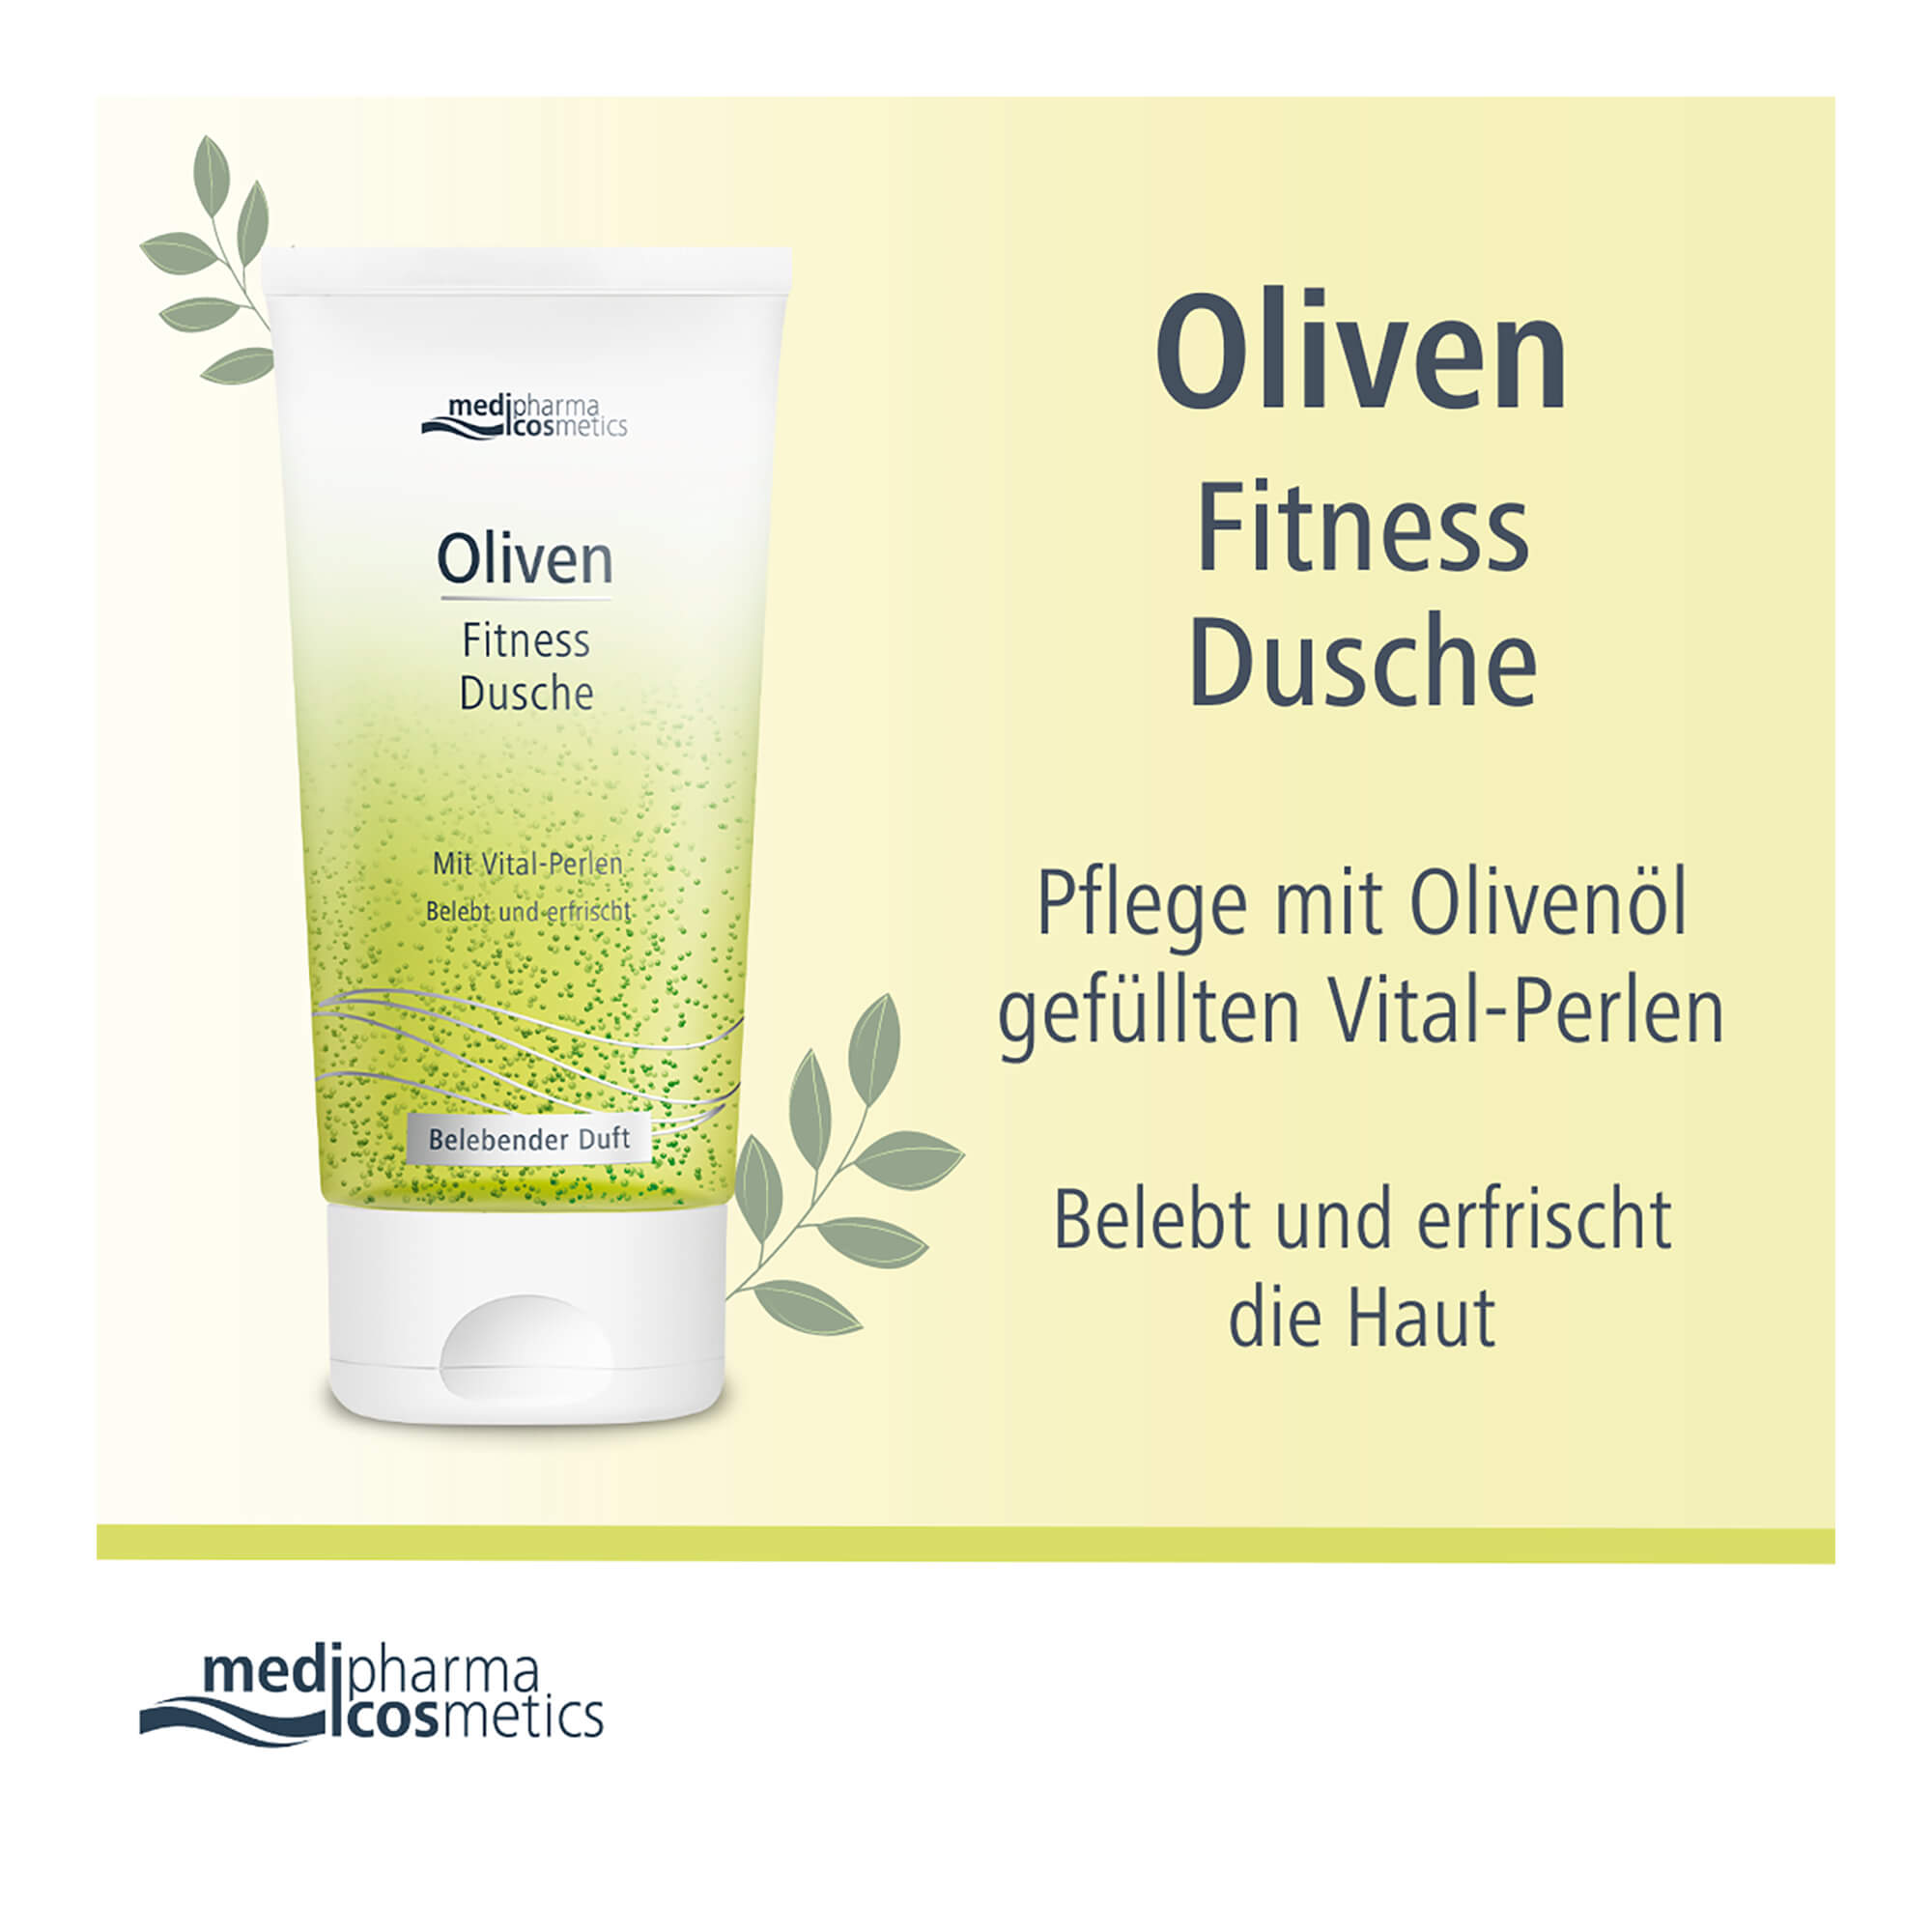 Grafik Oliven Fitness Dusche Pflege mit Olivenöl gefüllten Vital-Perlen. Belebt und erfrischt die Haut.